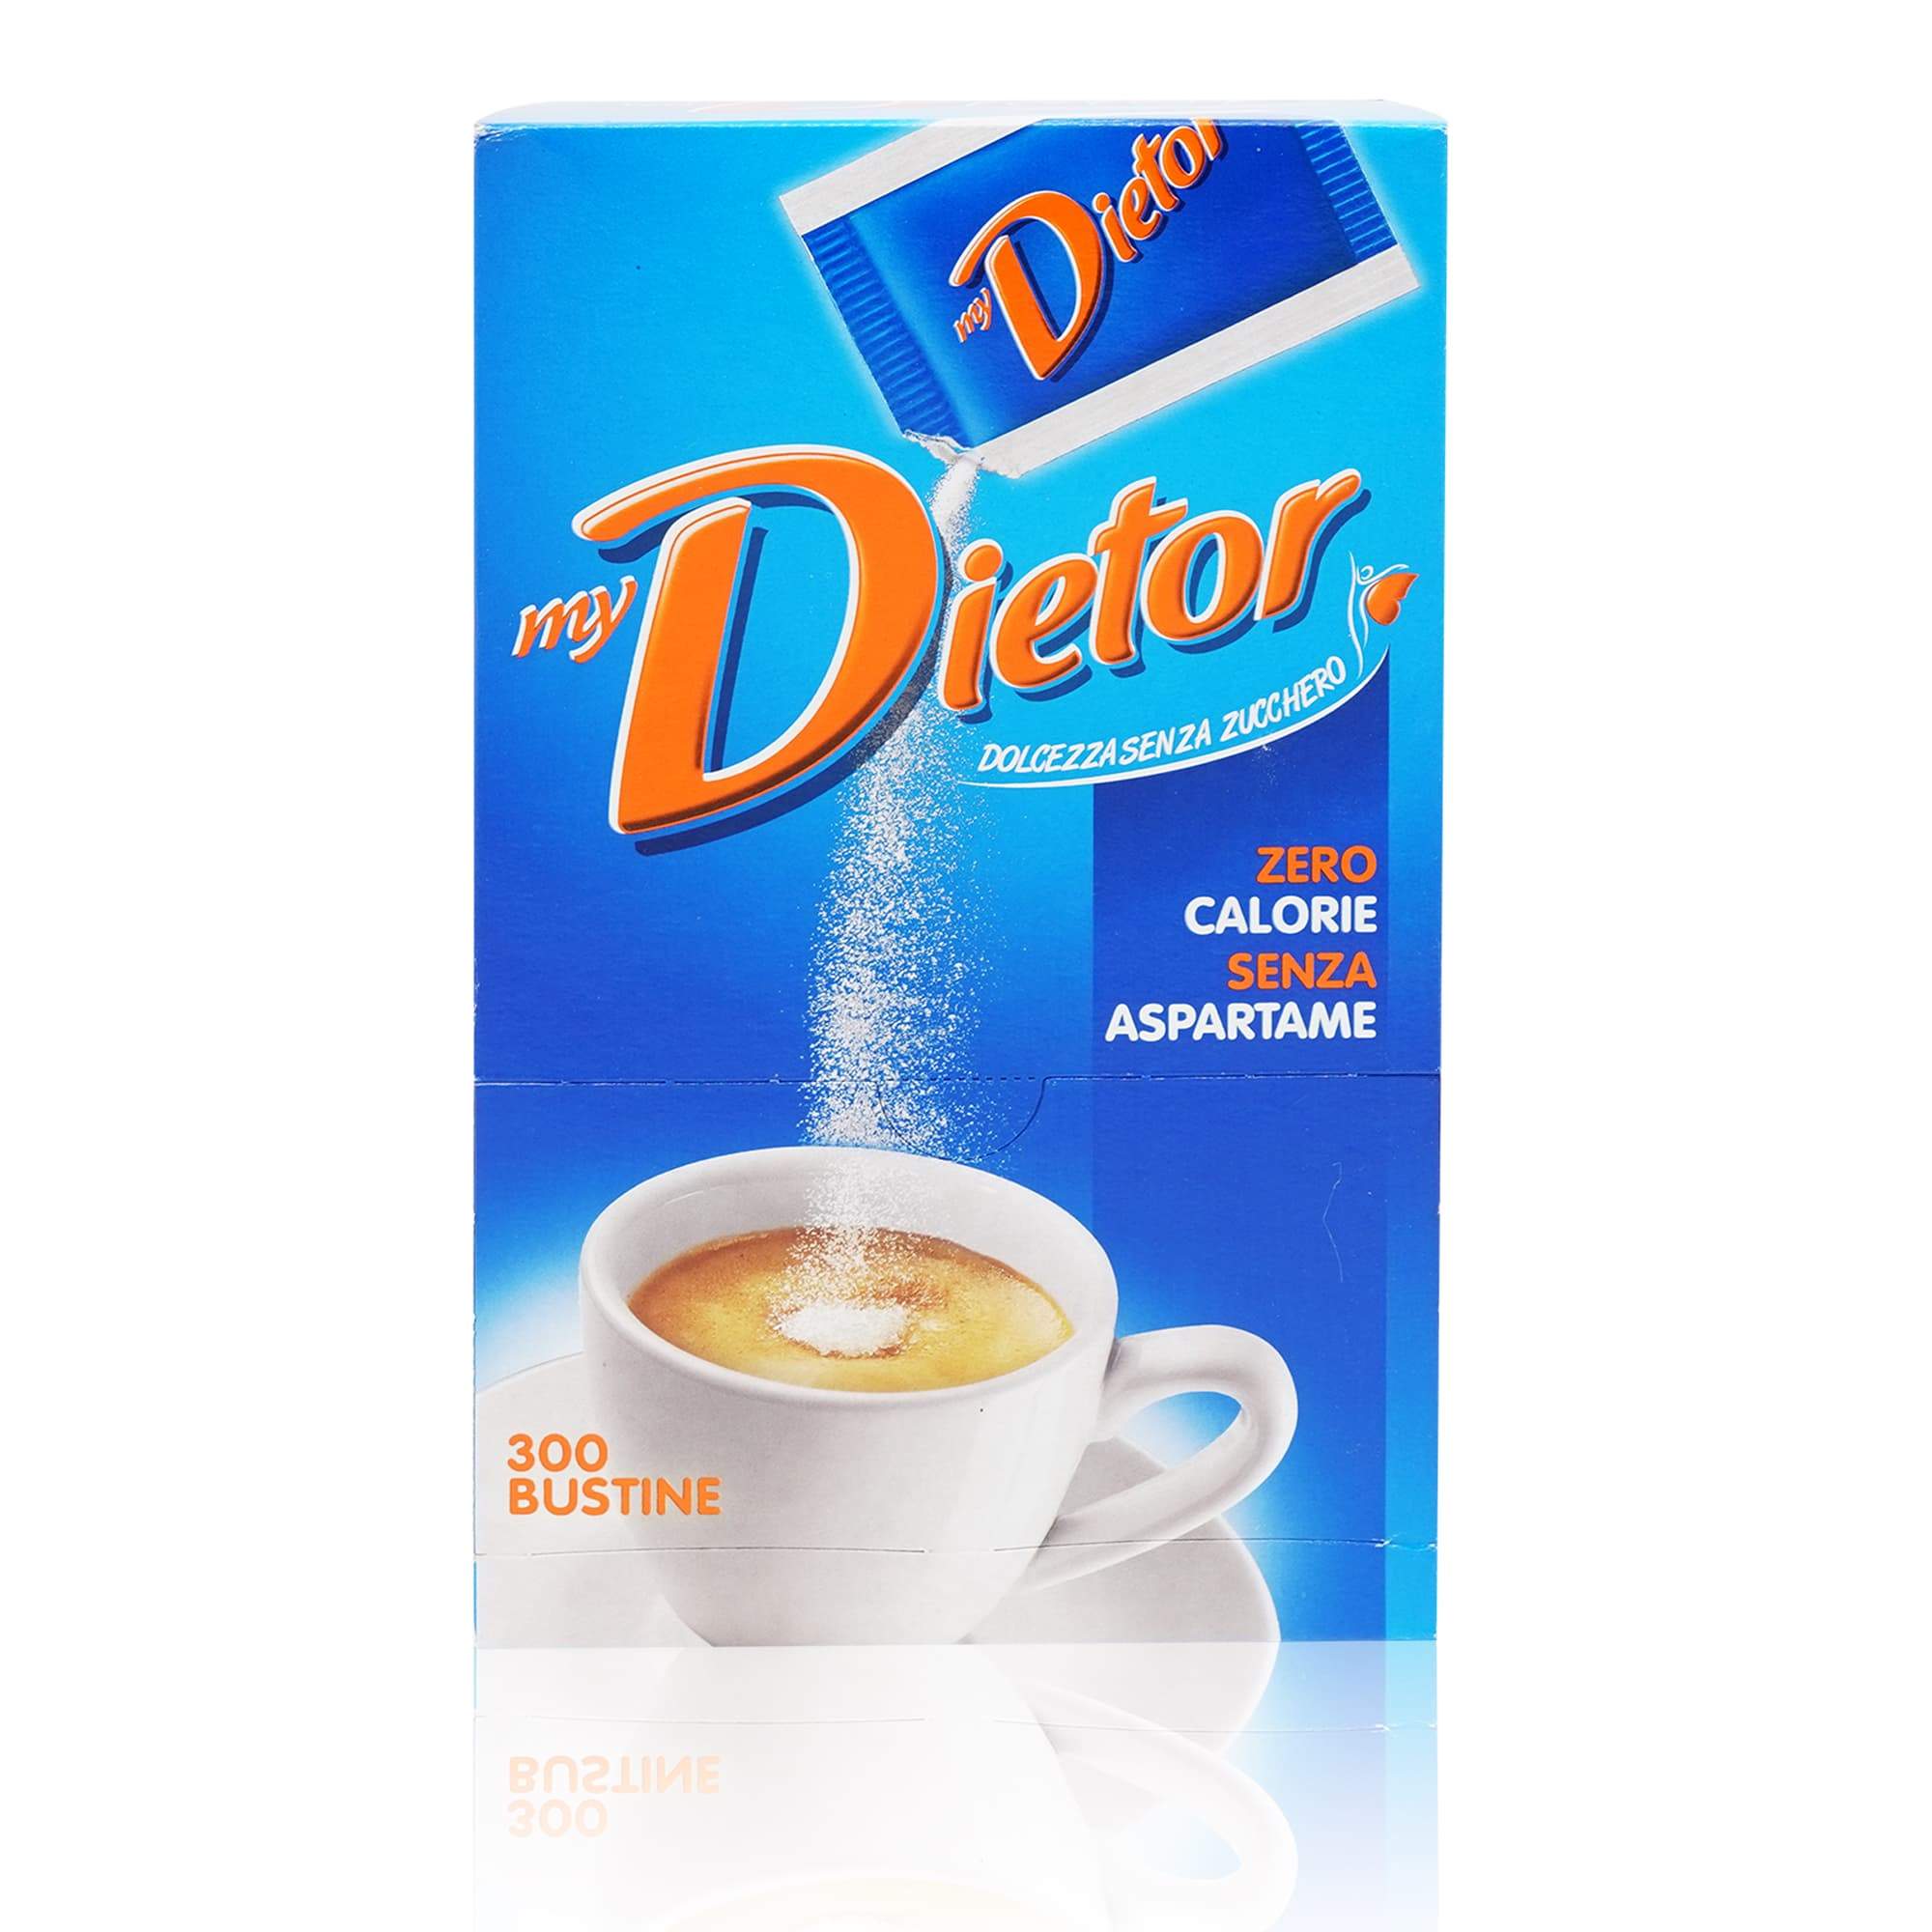 DIETOR My Dietor Dolcificante – My Dietor Süssstoff - 0,240kg - italienisch-einkaufen.de